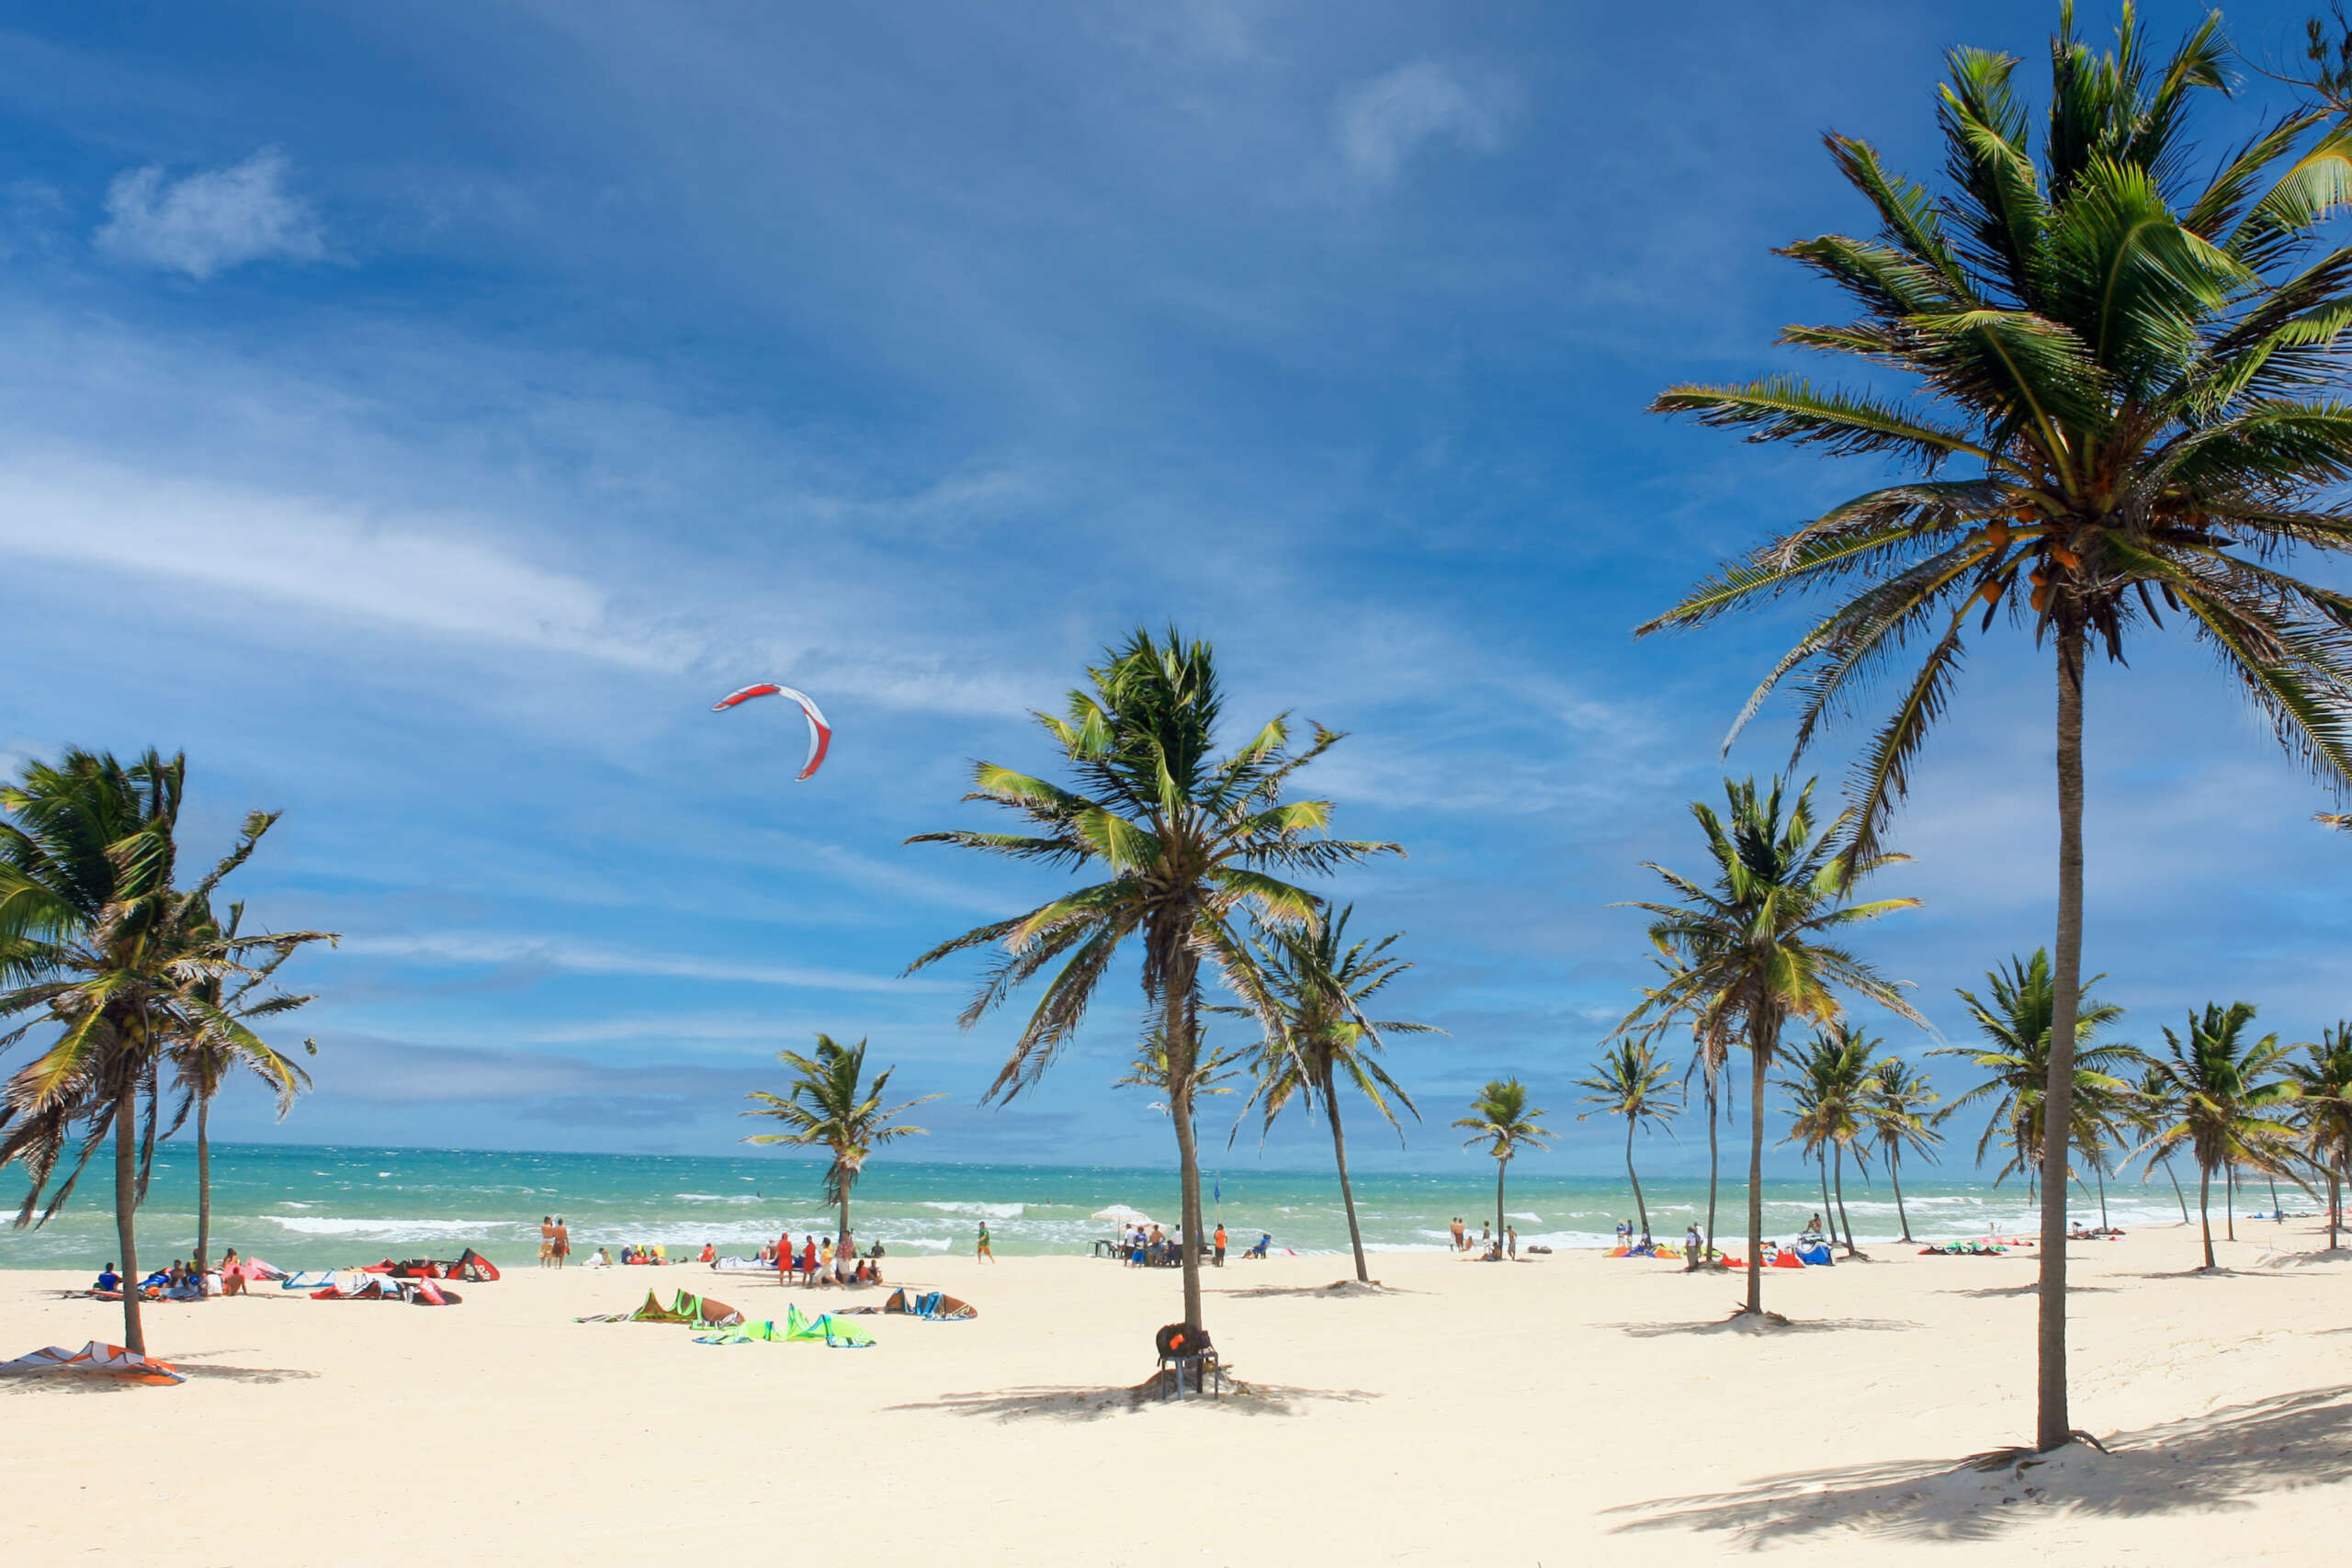 Conheça as praias brasileiras premiadas por qualidade ambiental e segurança em lista internacional 